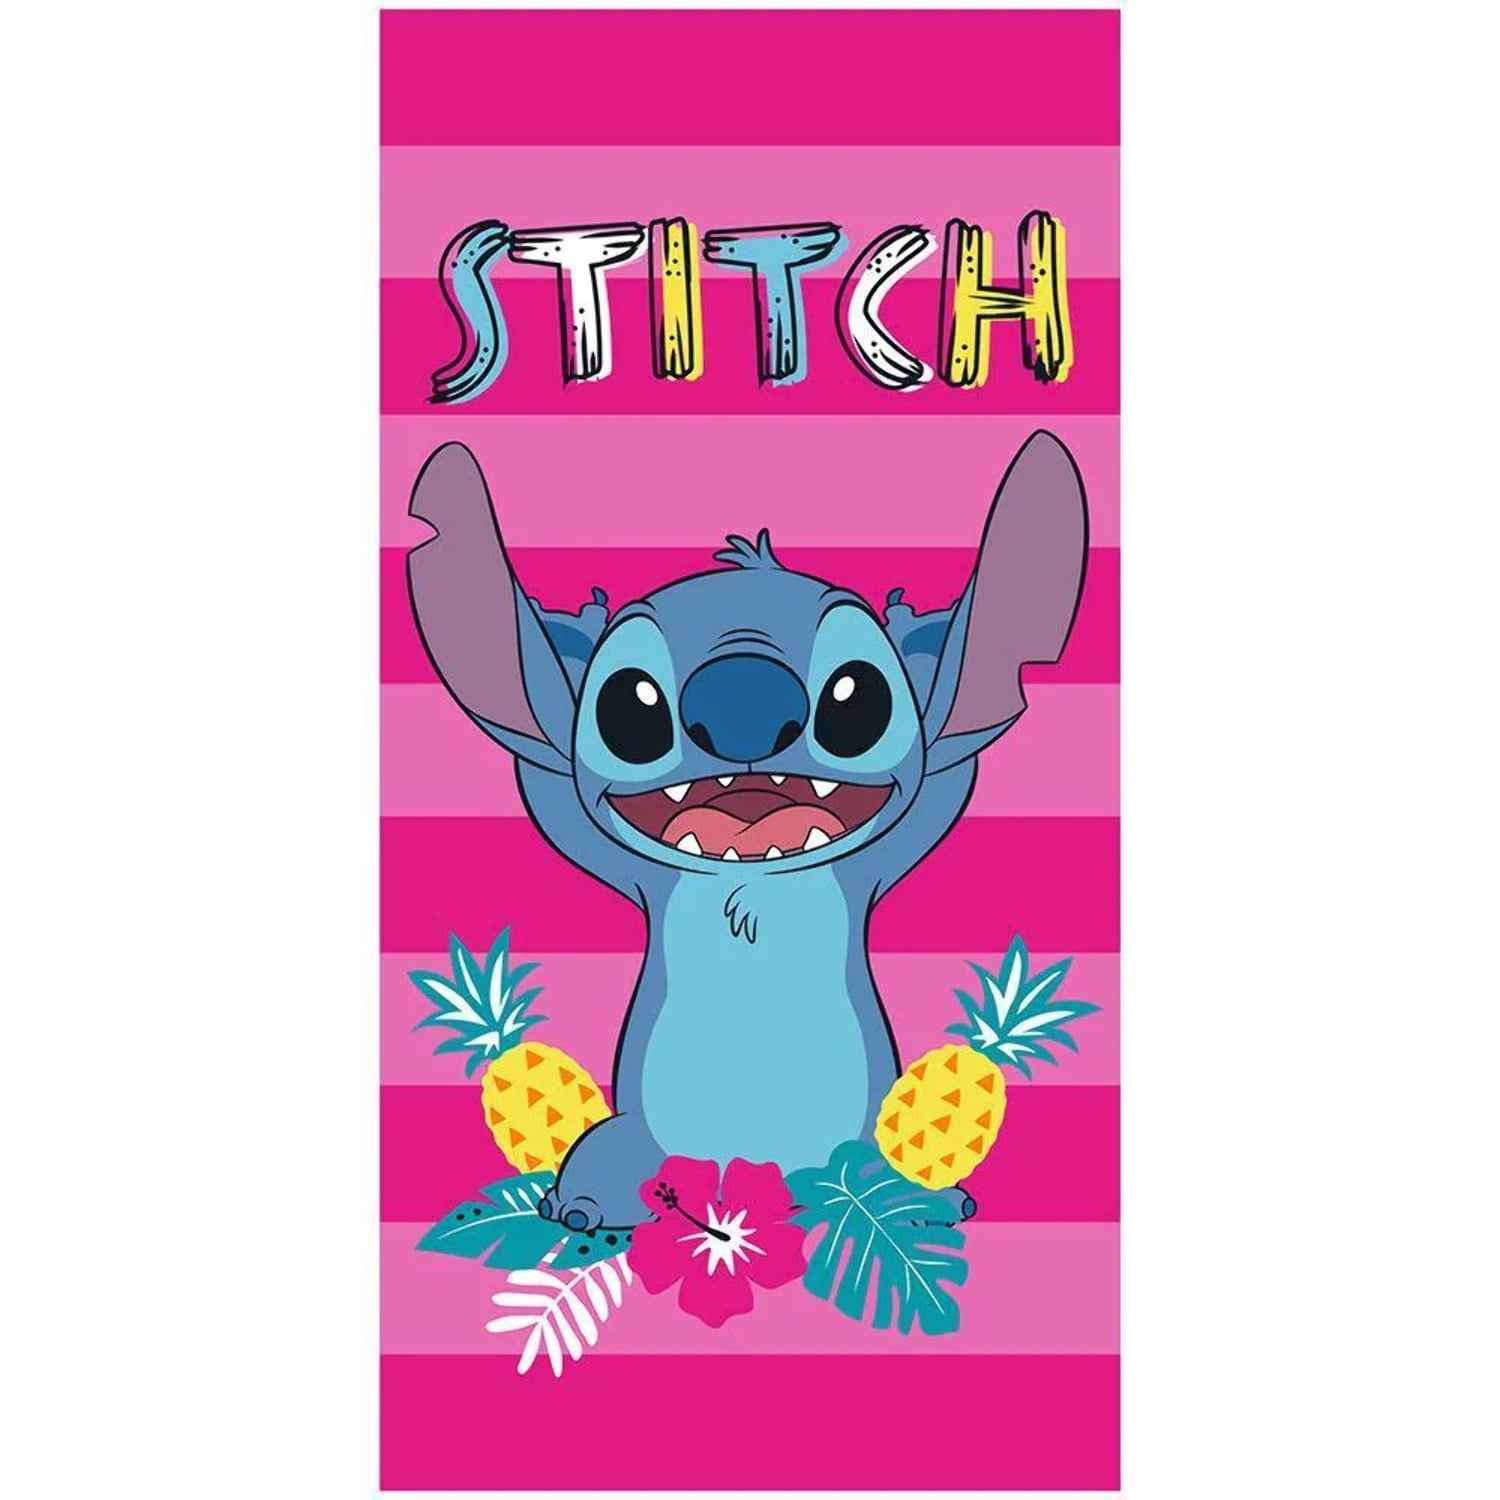 Khăn tắm Disney Stitch họa tiết sọc màu hồng là một trong những món đồ dùng dịp đi biển được các tín đồ của Disney yêu thích nhất. Với thiết kế vô cùng đáng yêu của chú chuột Stitch, khăn tắm này chắc chắn sẽ làm hài lòng mọi tín đồ Disney.